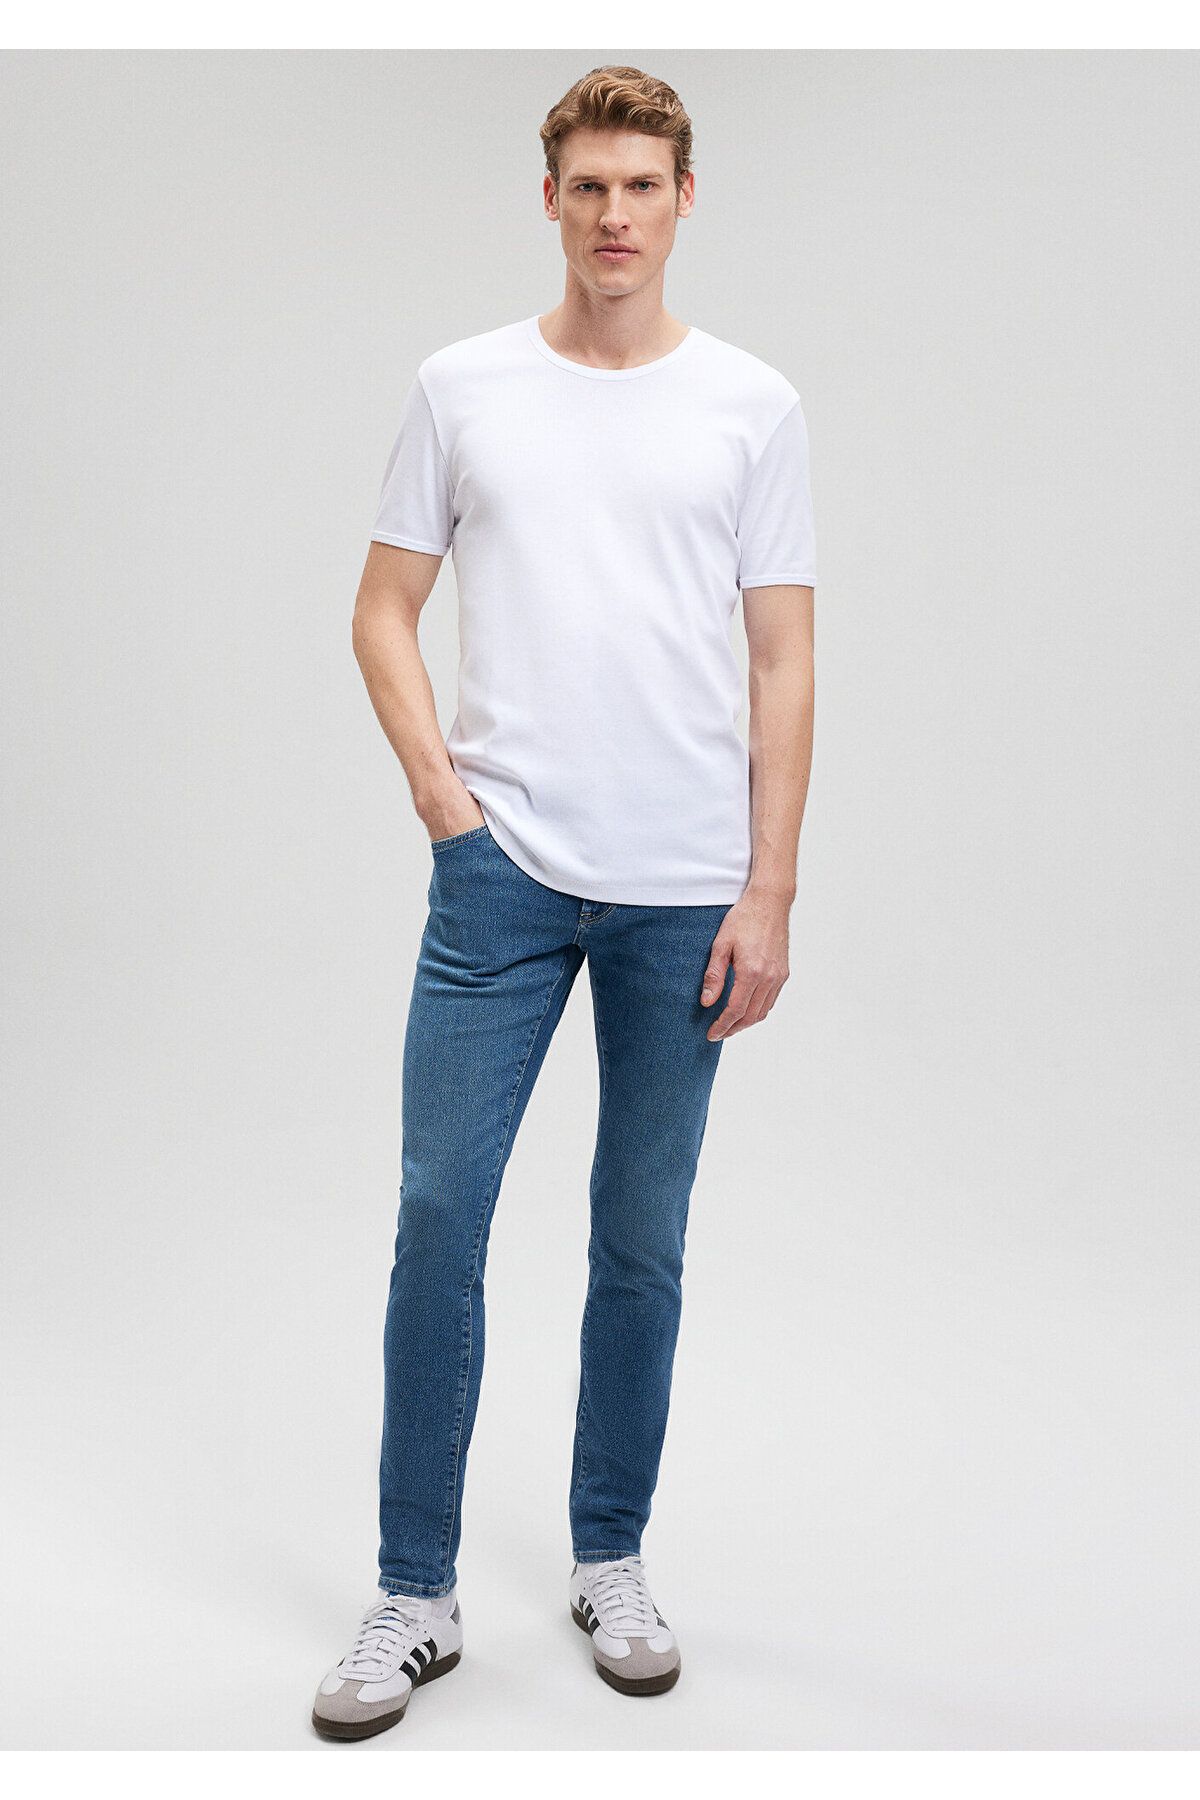 Mavi Ribana Detaylı Beyaz Tişört Slim Fit / Dar Kesim 063747-620